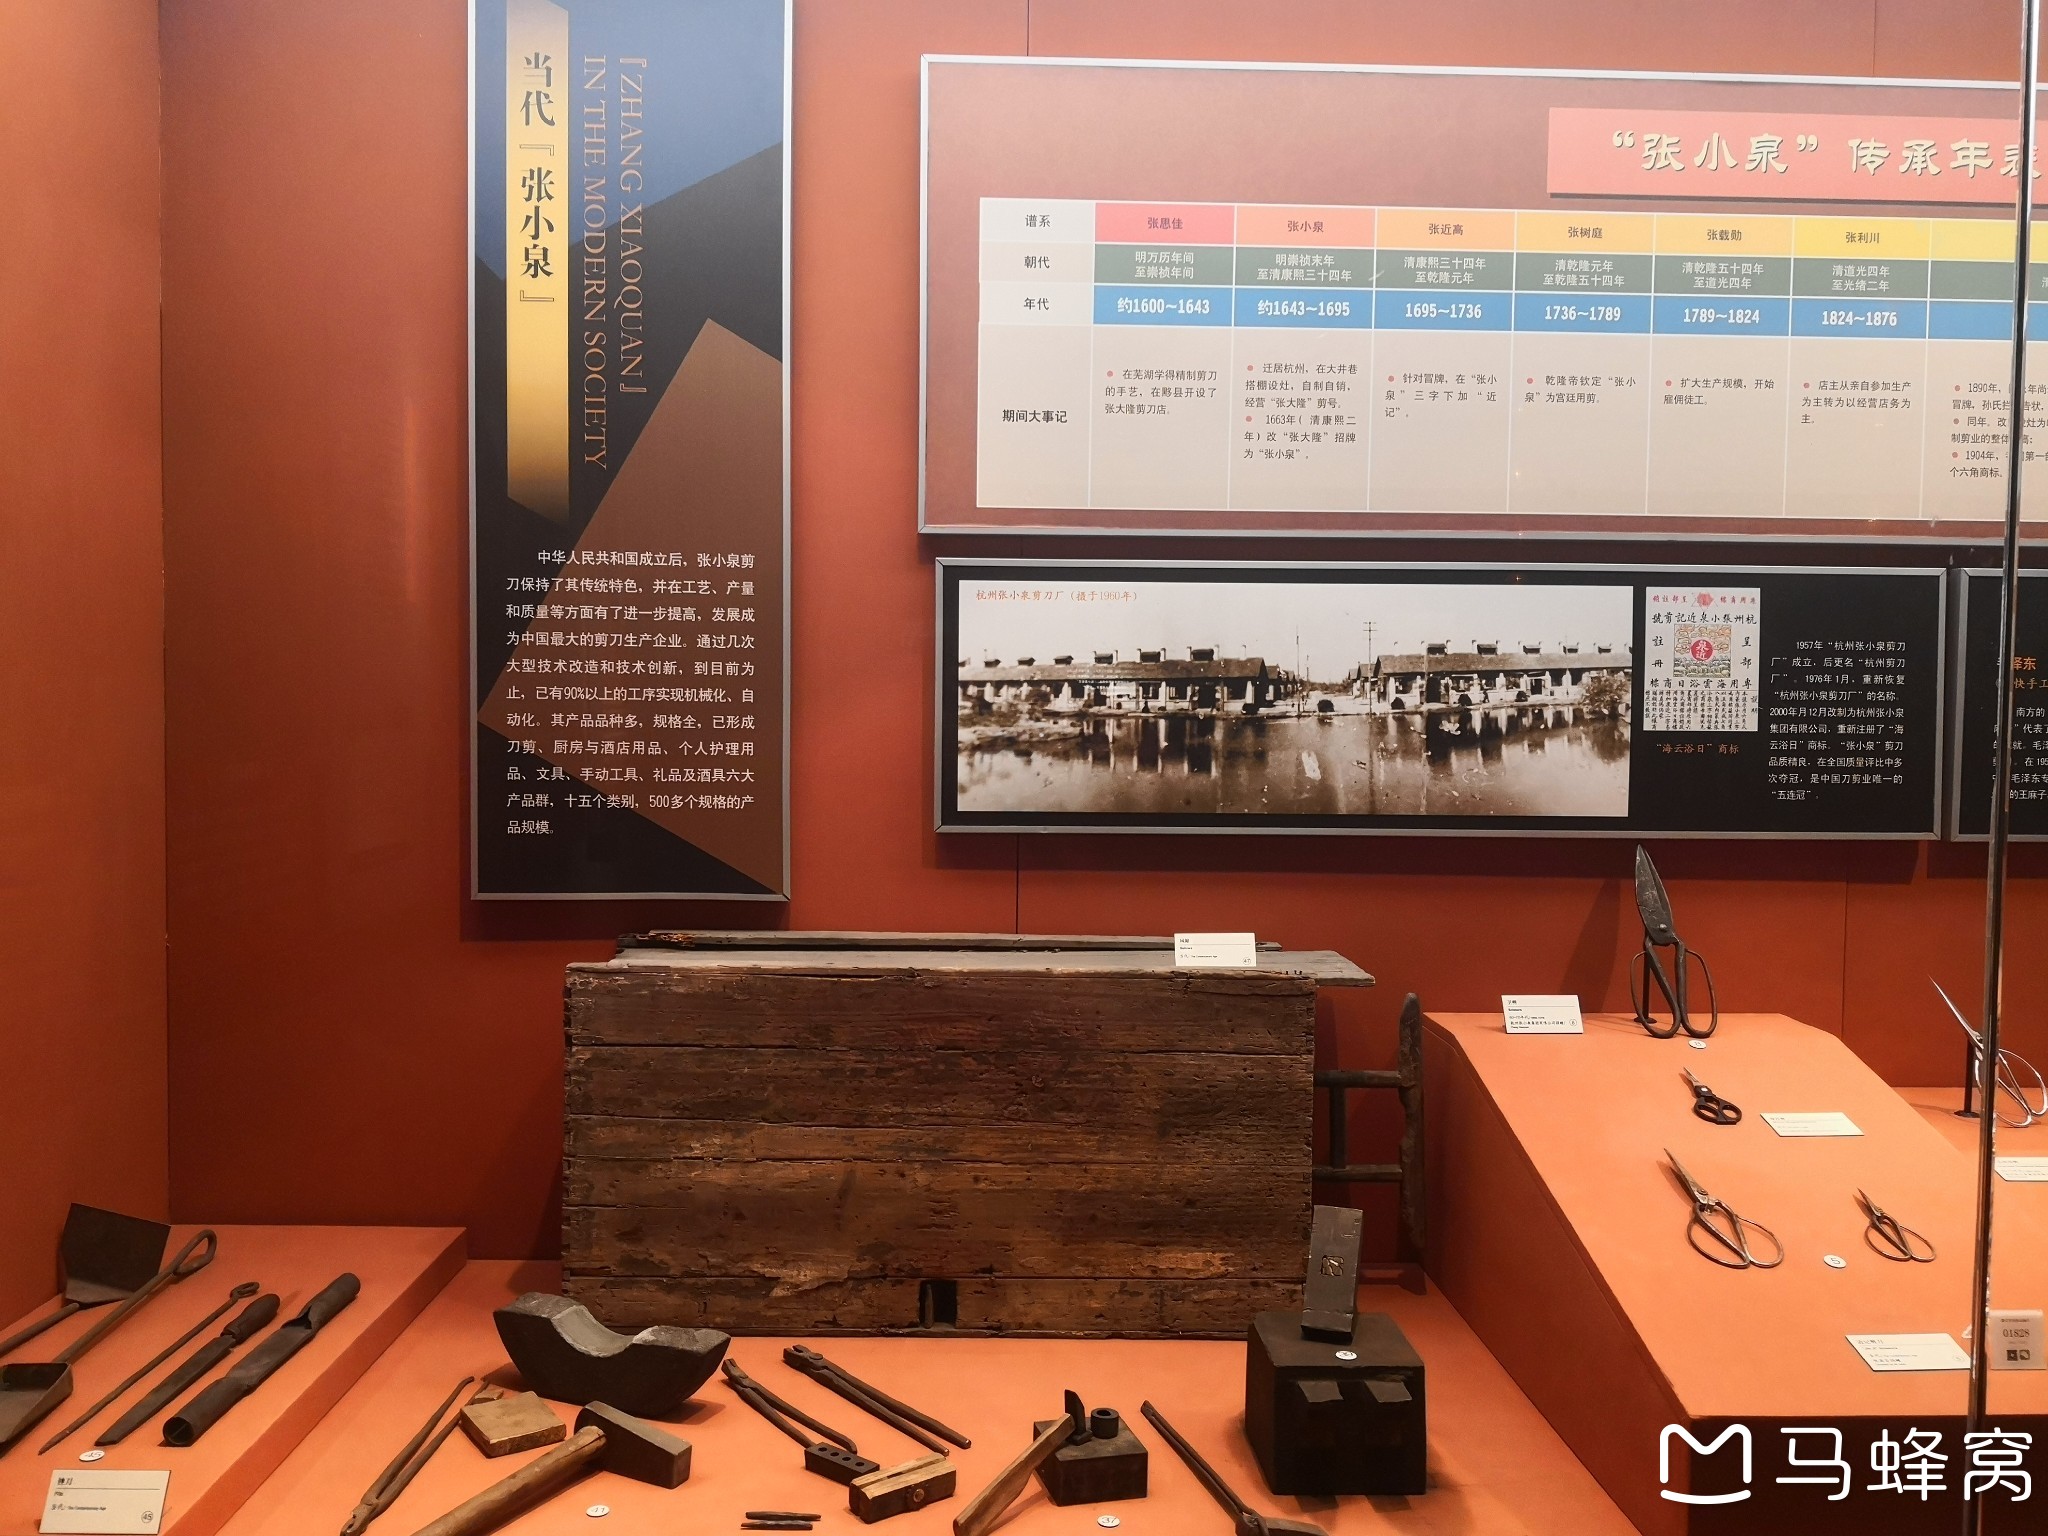 杭州拱墅区的"中国刀剪剑博物馆"内的"张小泉剪刀博物馆"----走遍杭州